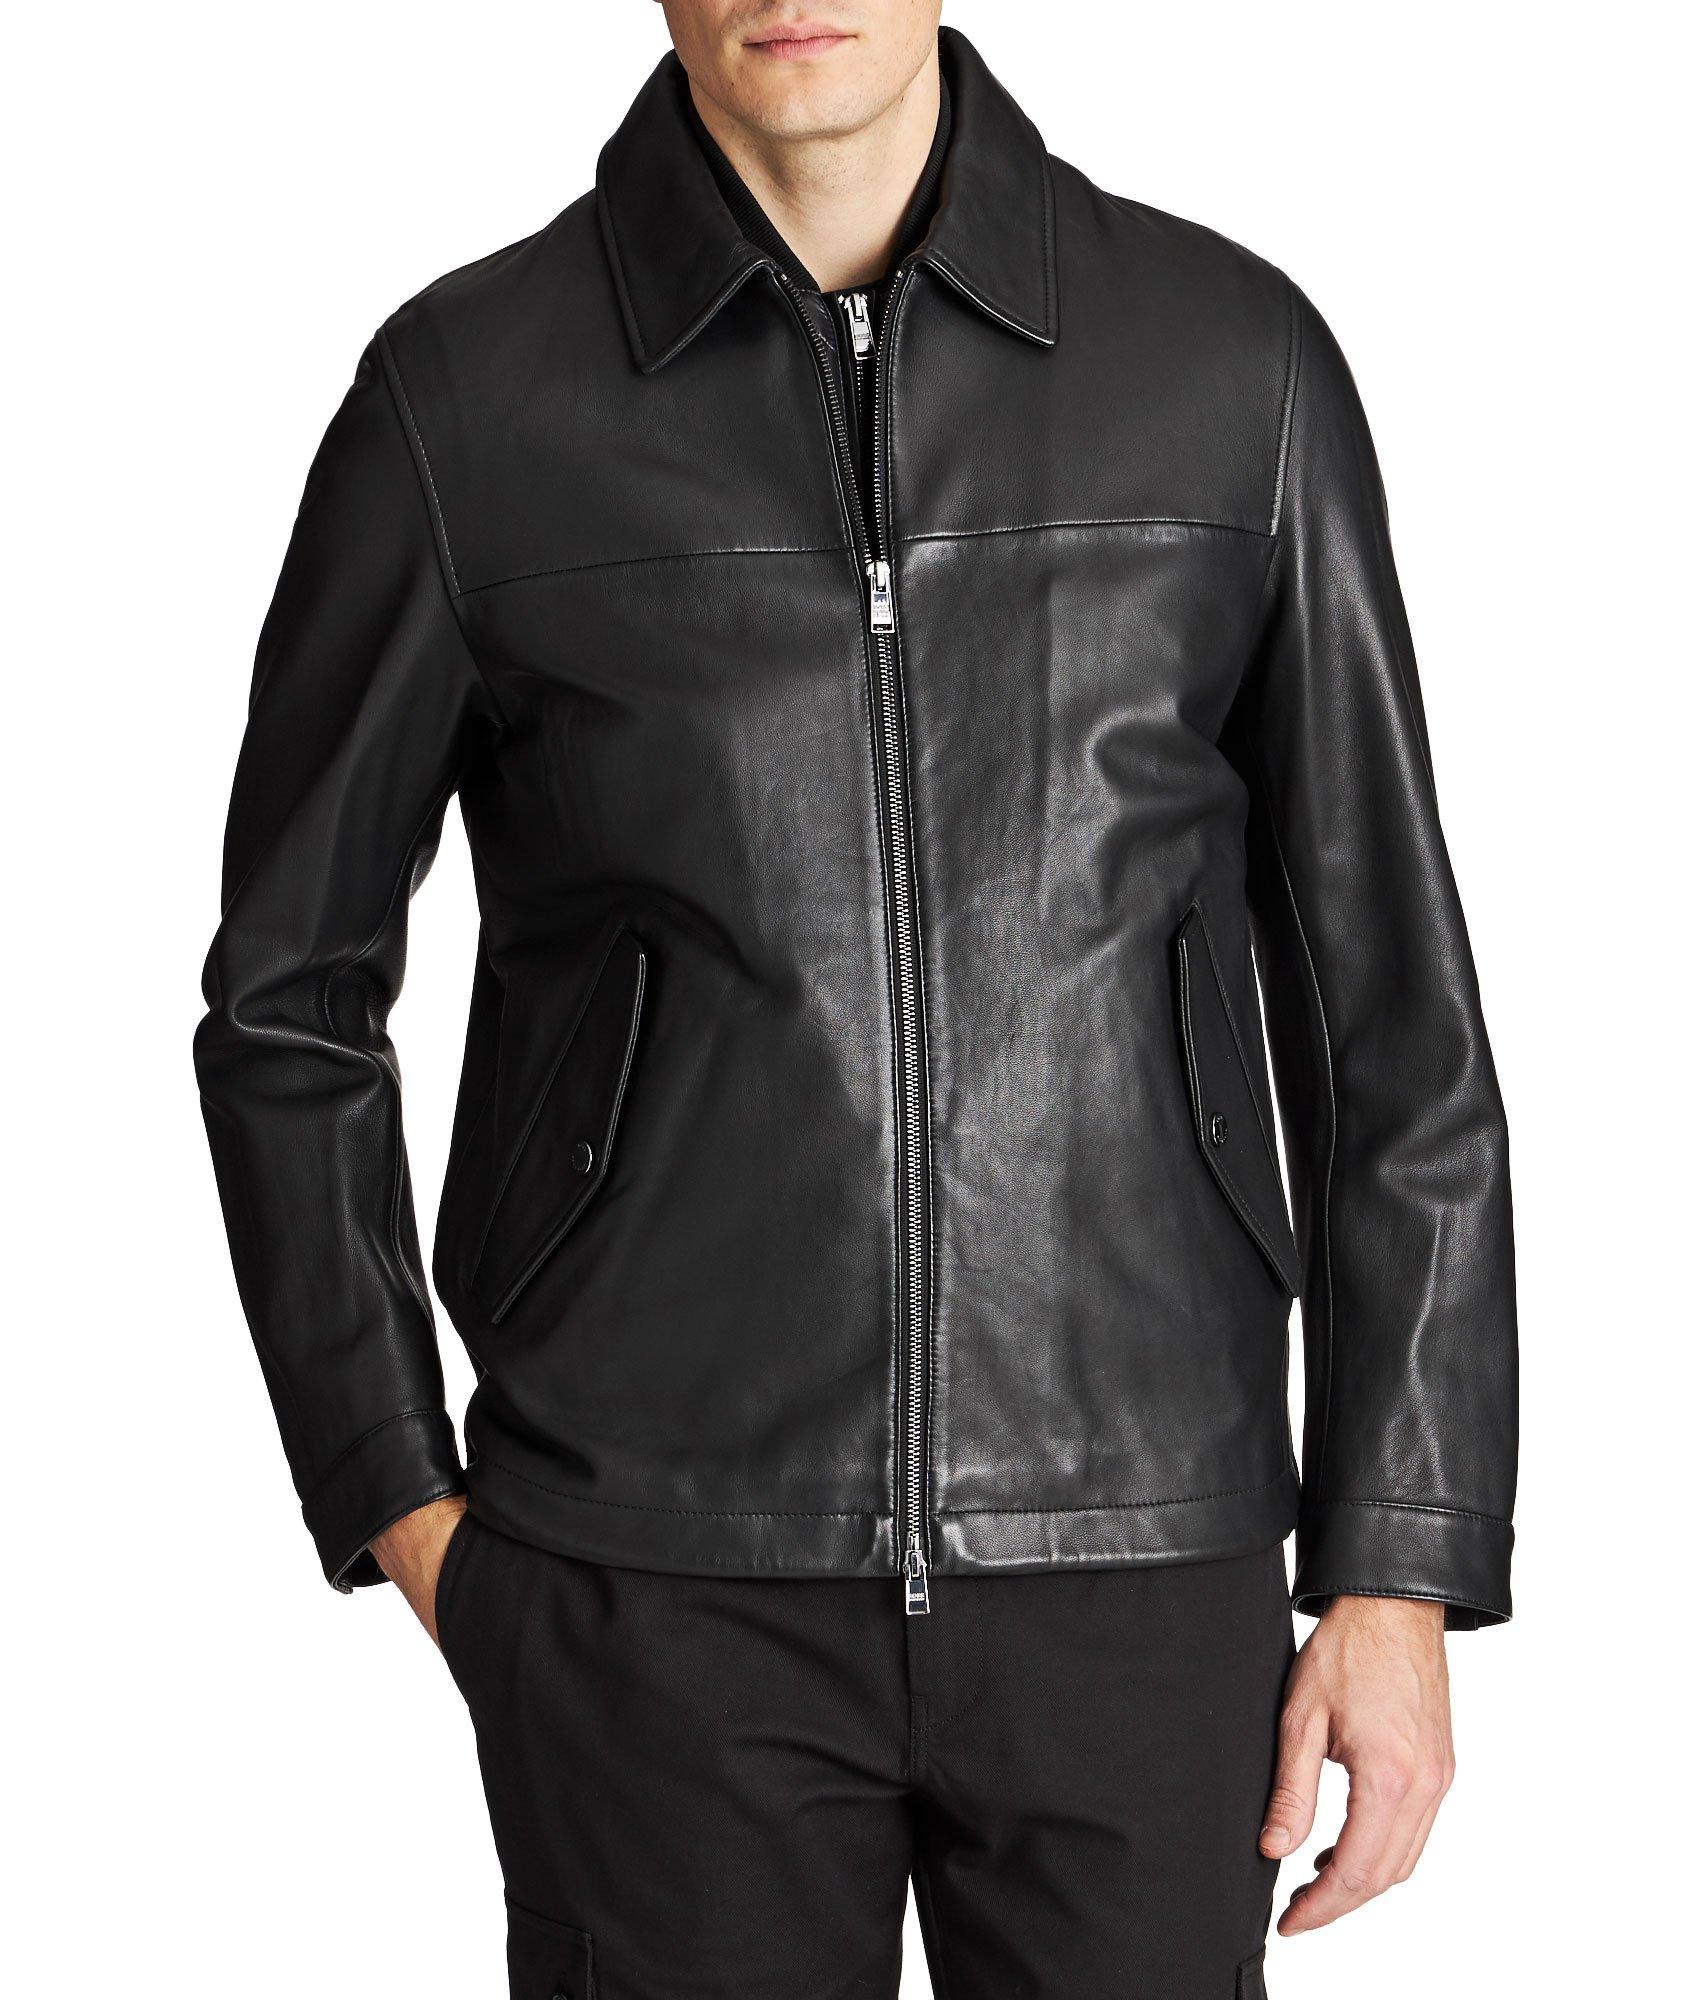 Mupton Leather Jacket image 0